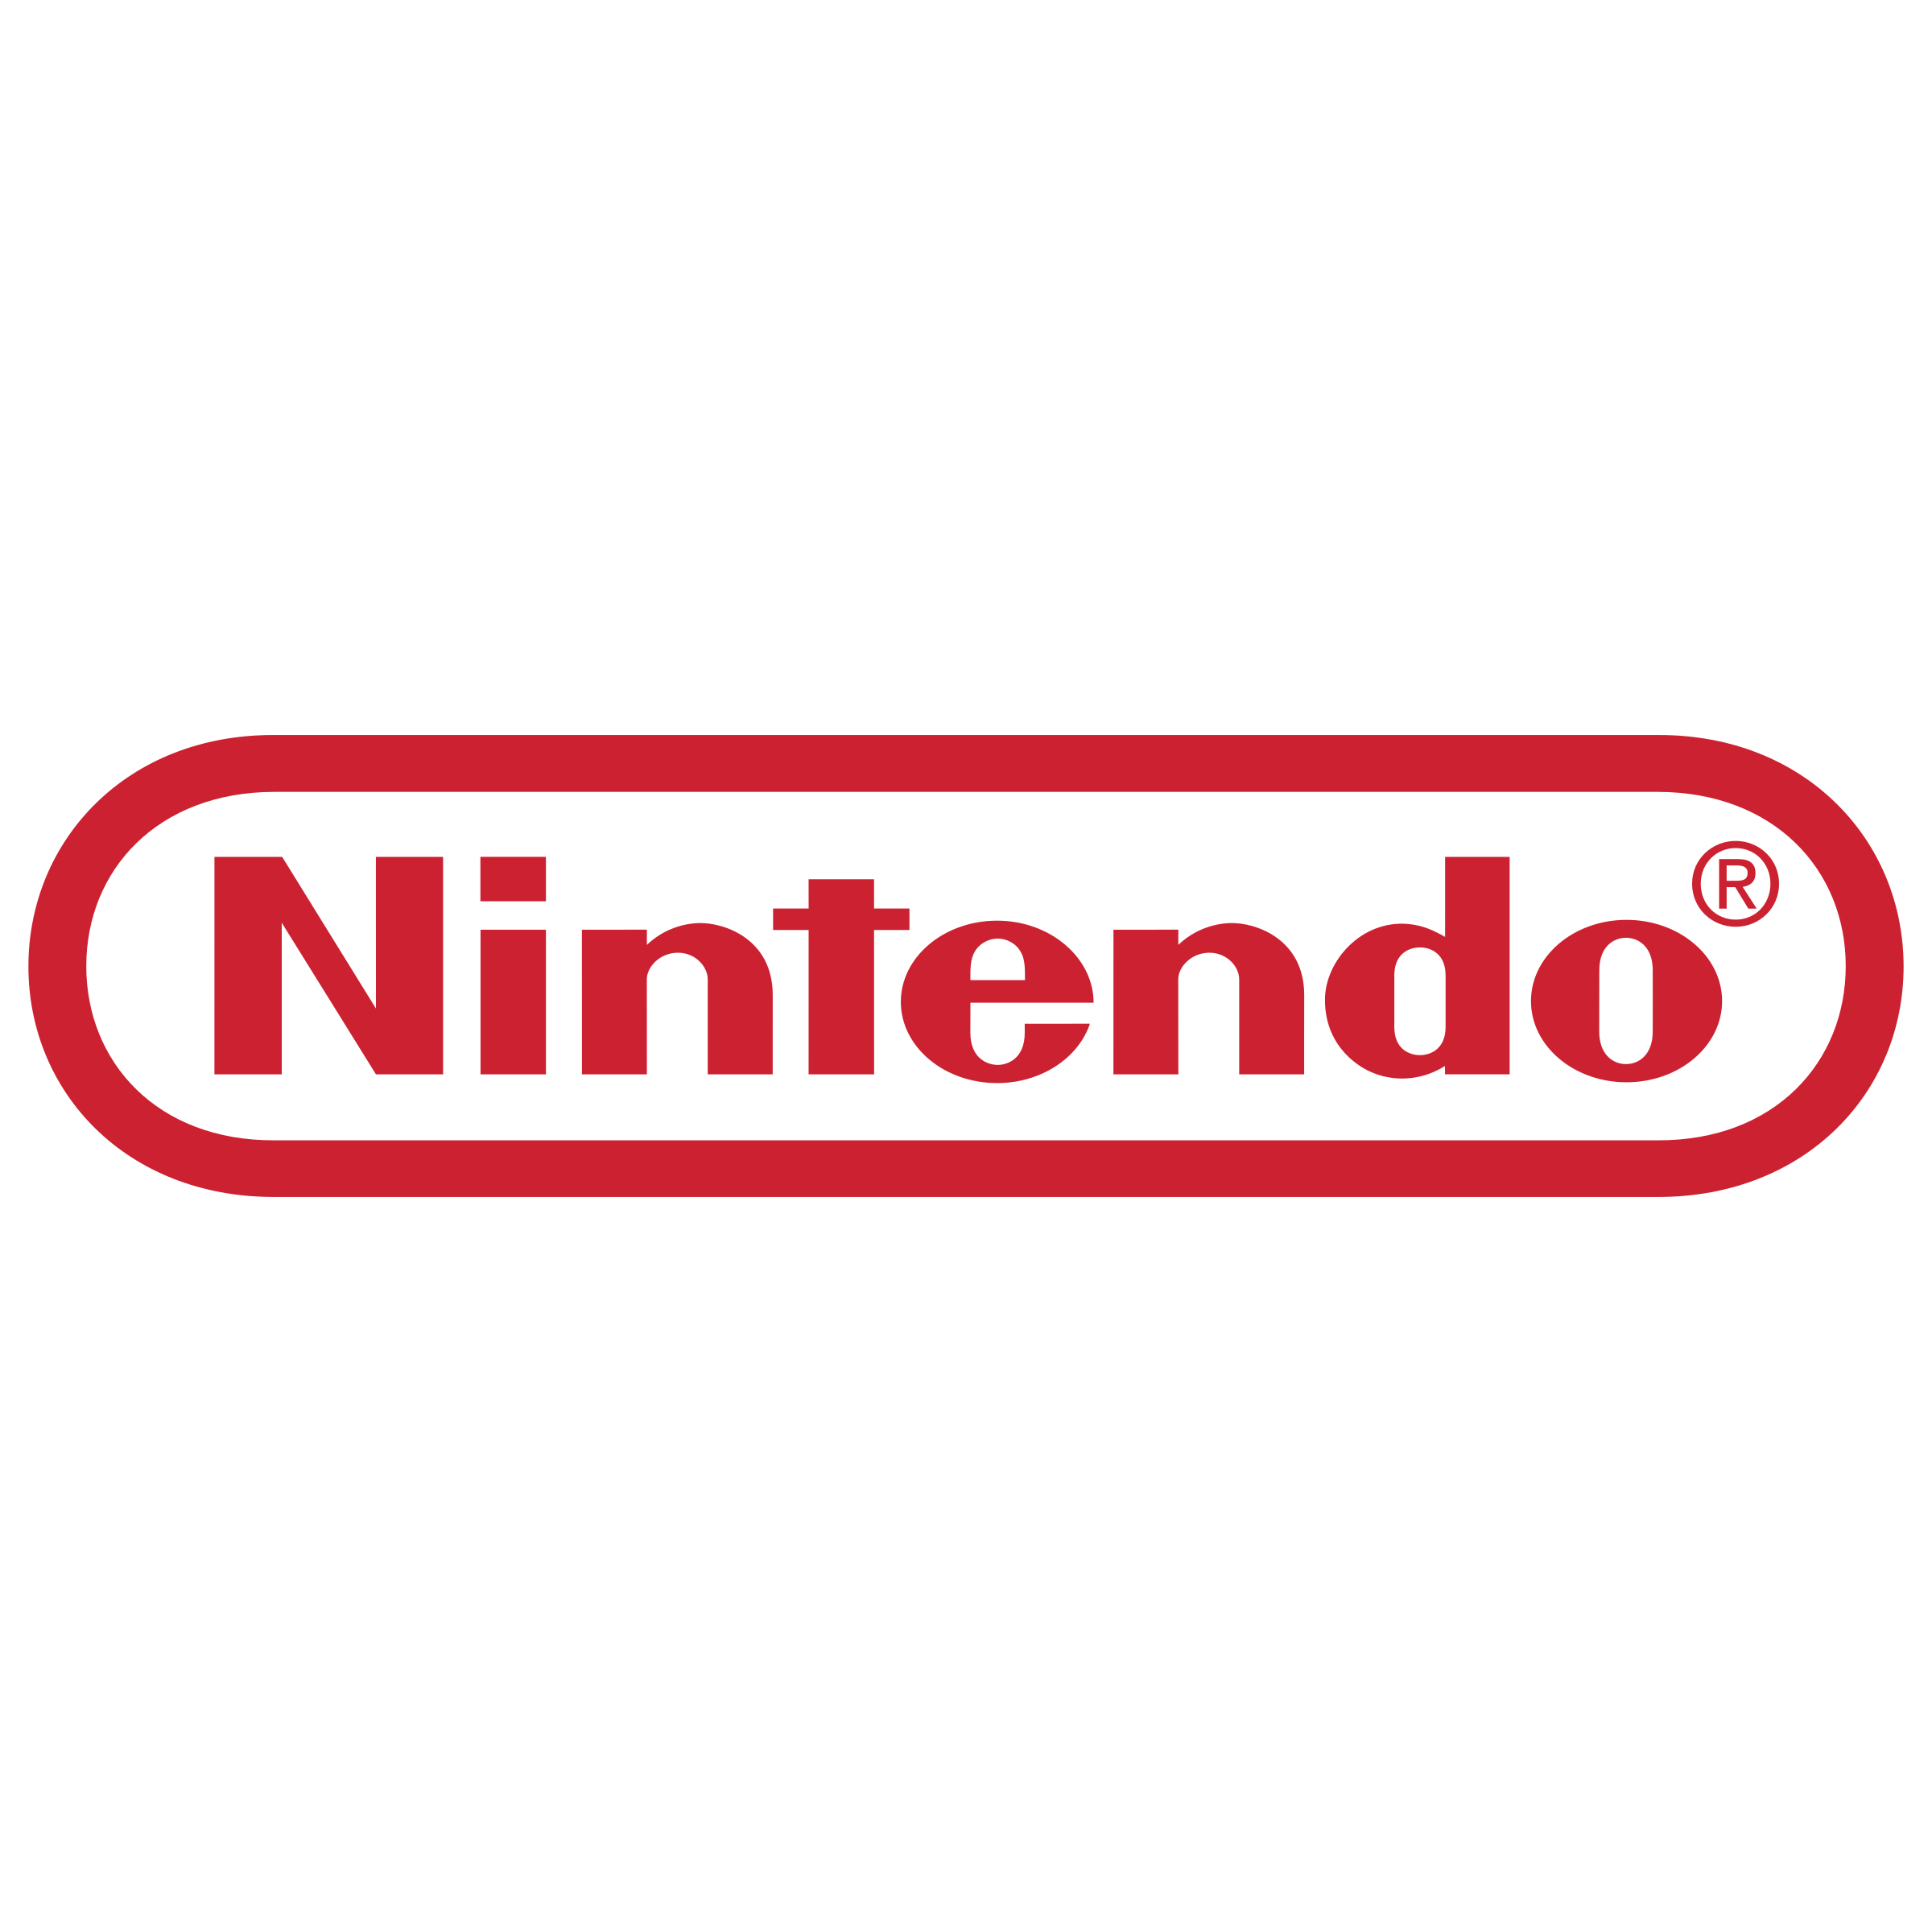 Nintendo Logo - Nintendo Logo PNG Transparent & SVG Vector - Freebie Supply